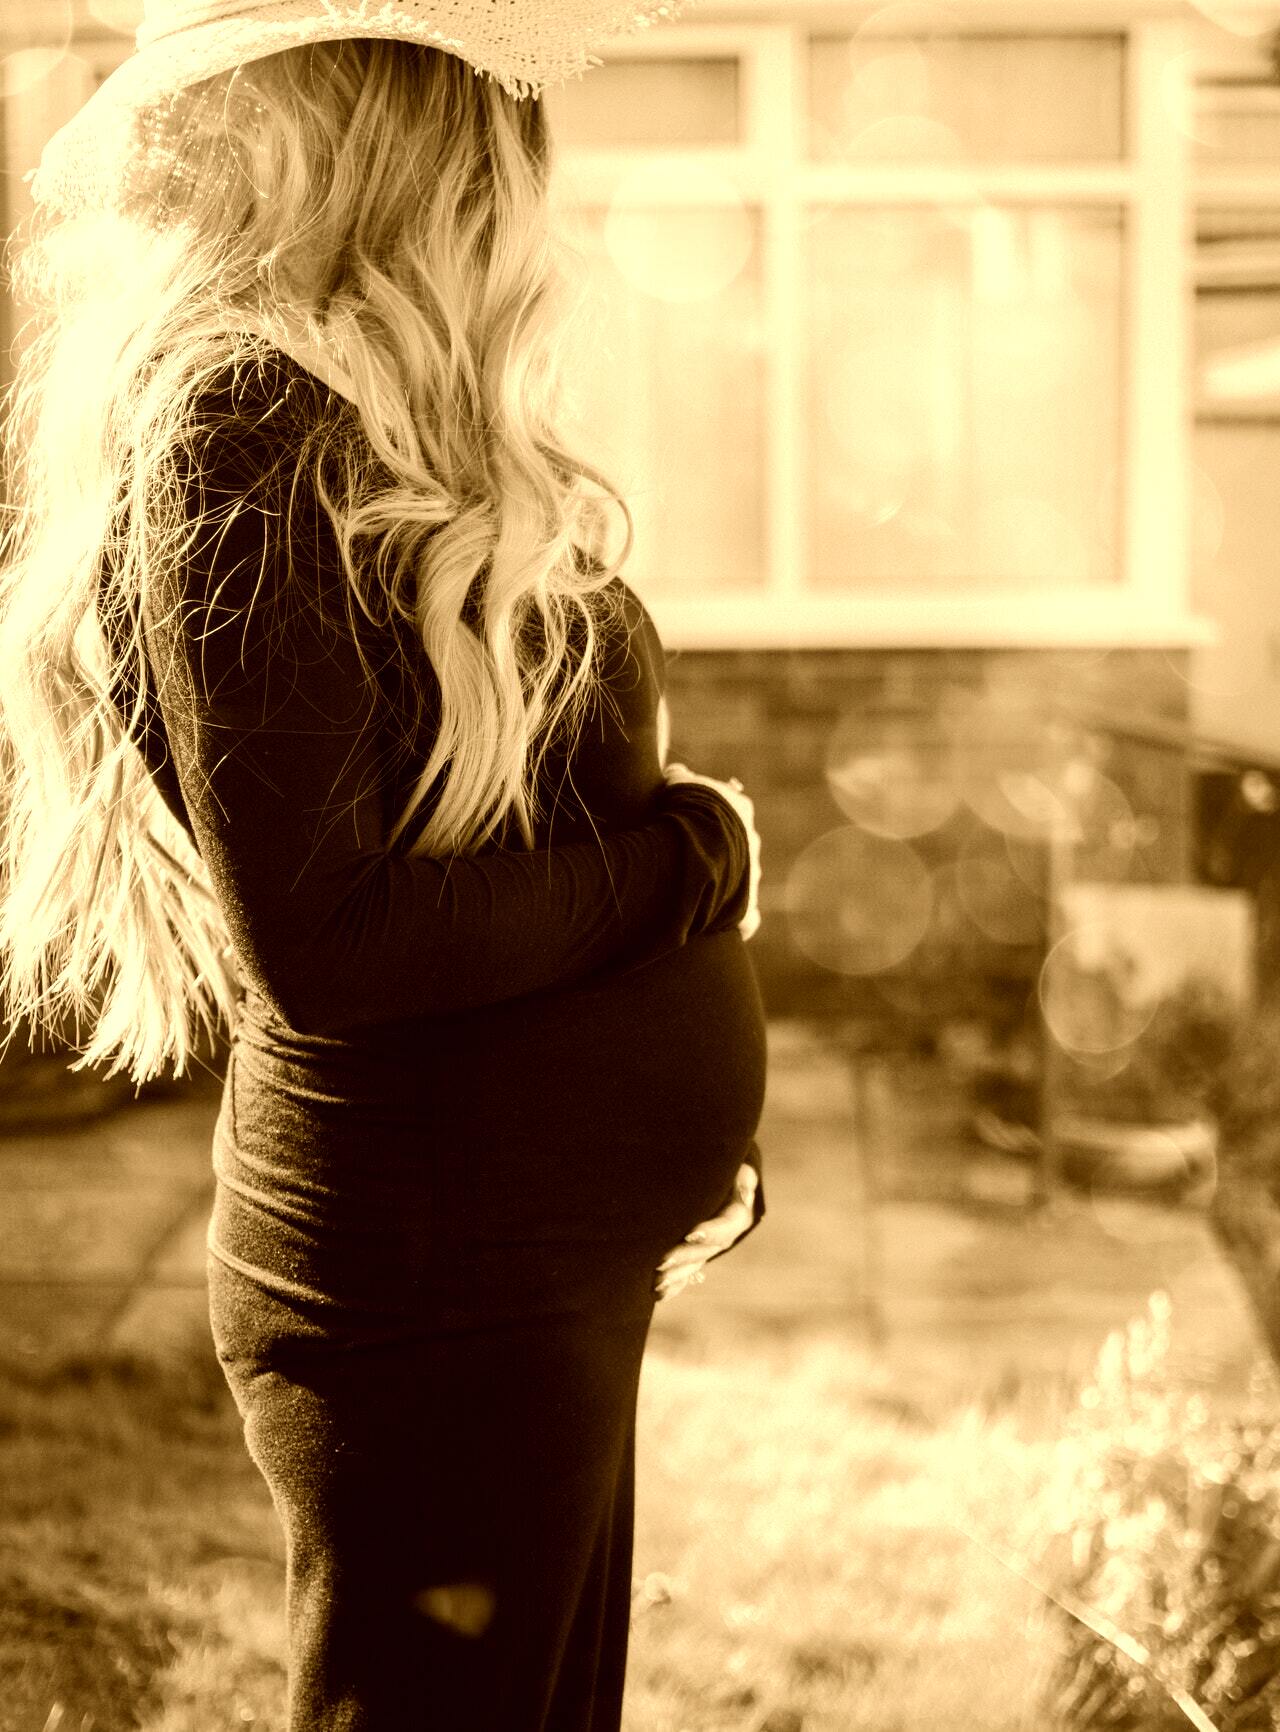 Sie hat sich in der Vergangenheit dazu entschieden, ihm die Schwangerschaft zu verschweigen. | Quelle: Pexels